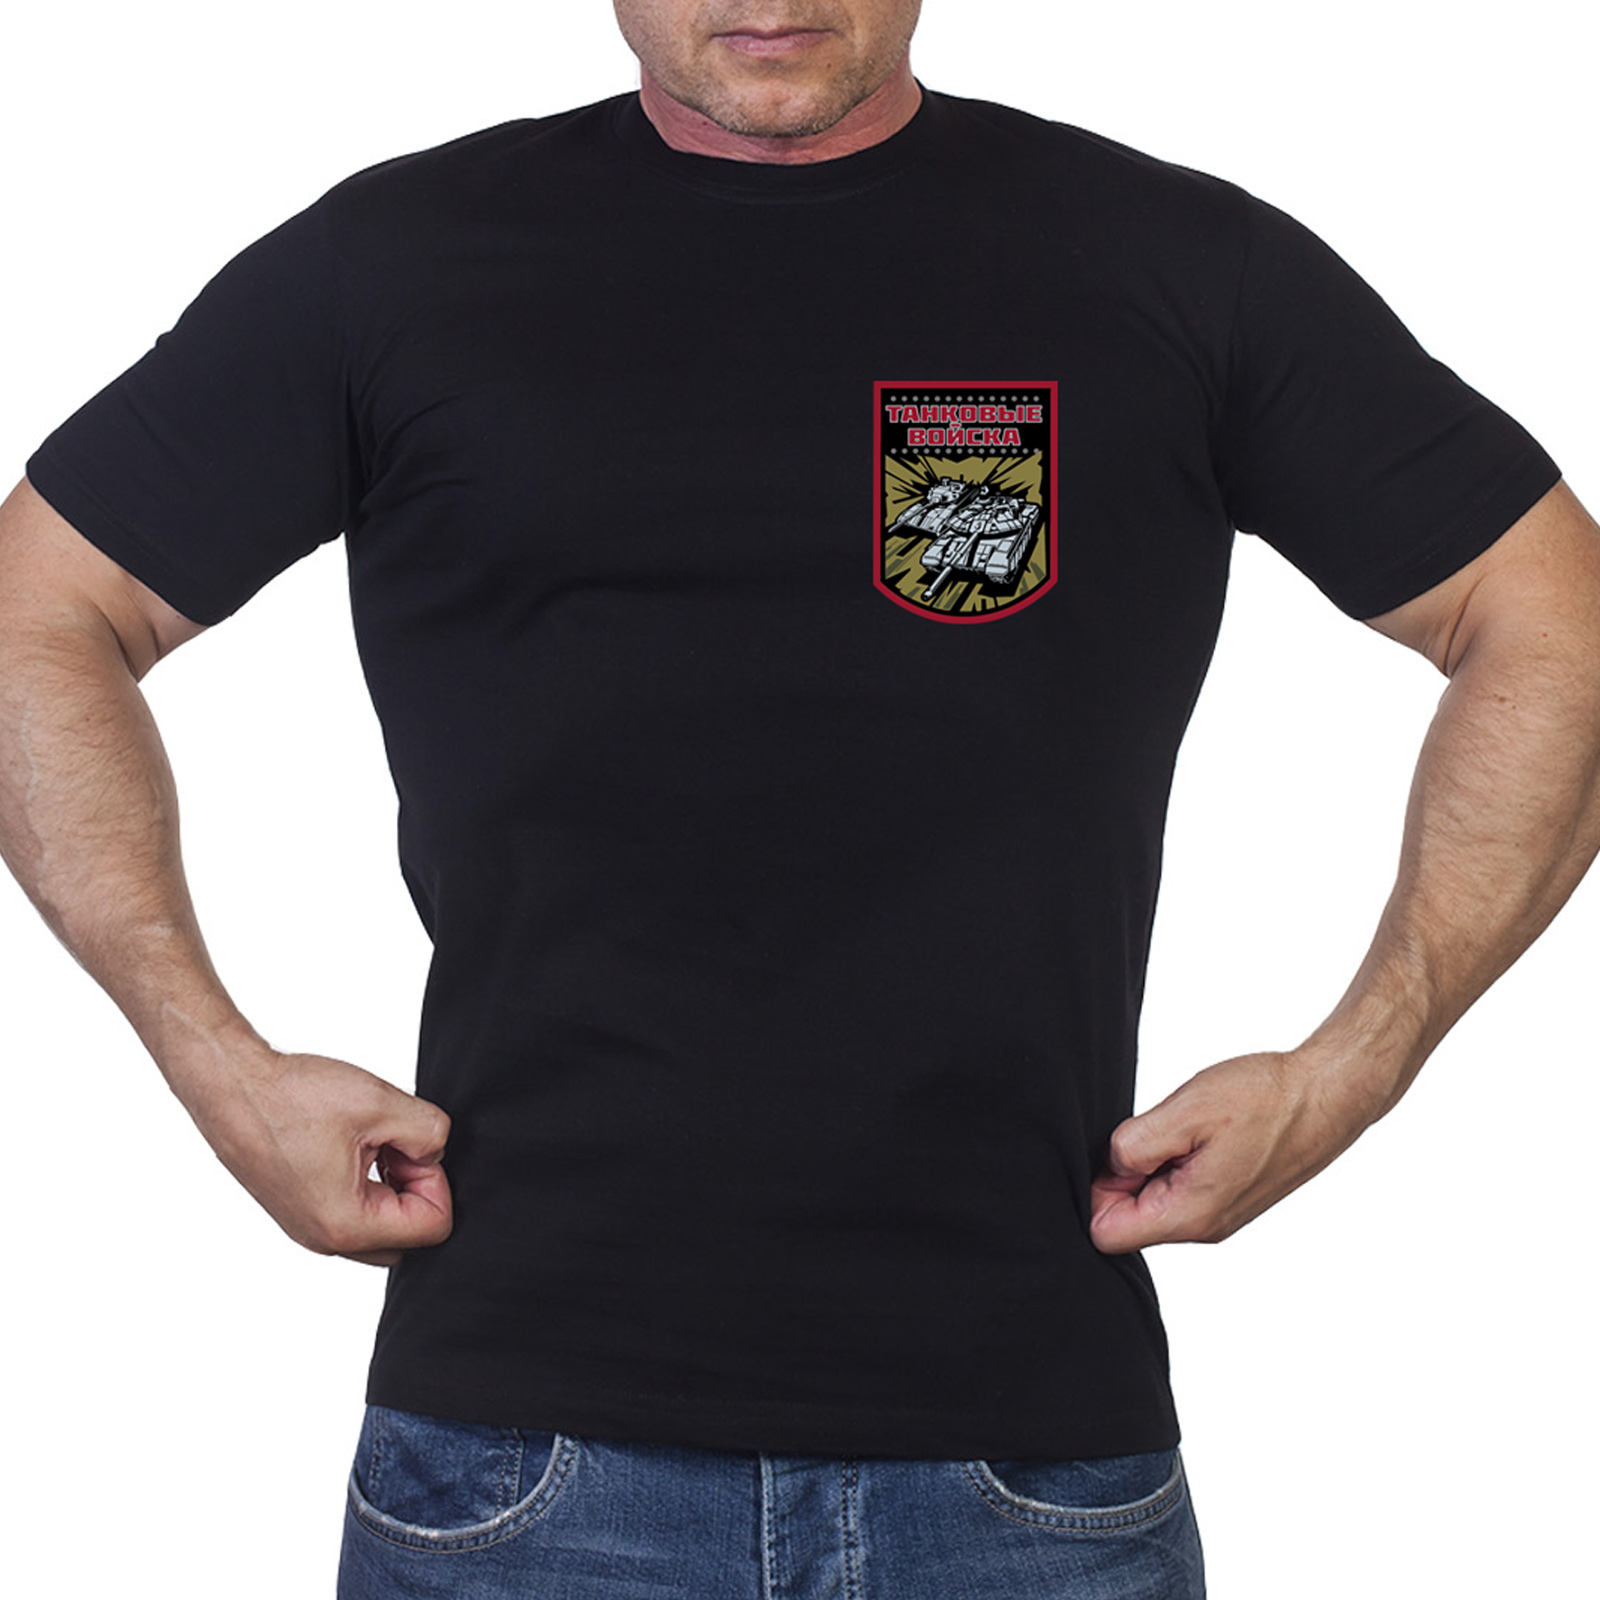 Купить в интернет магазине футболку с принтом Танковых войск